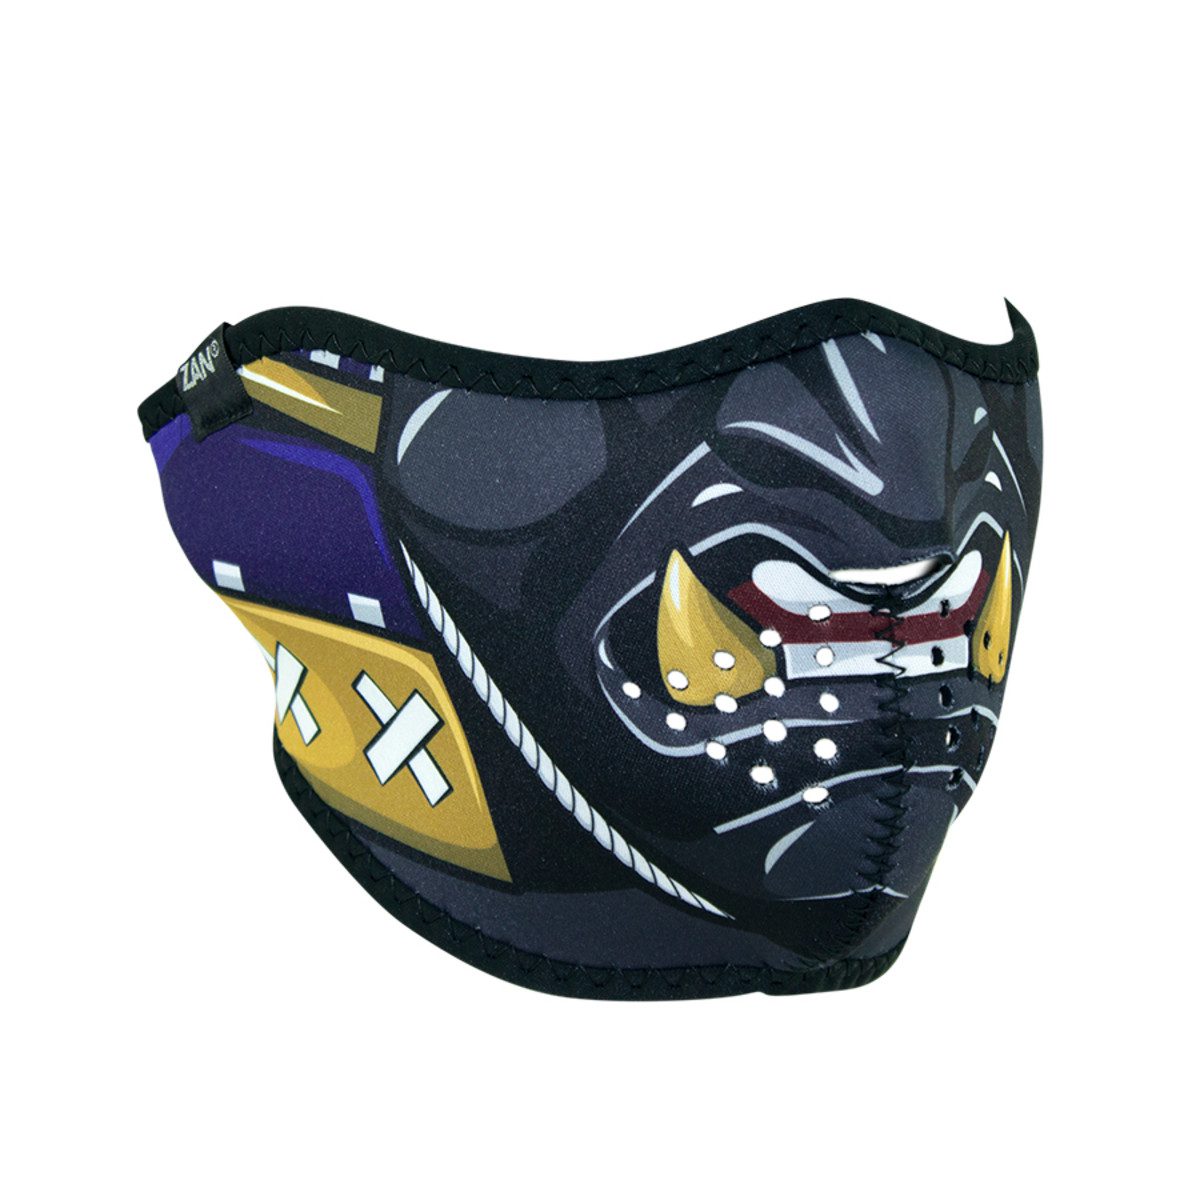 Zan Headgear Neoprene Half-Face Mask - Samurai